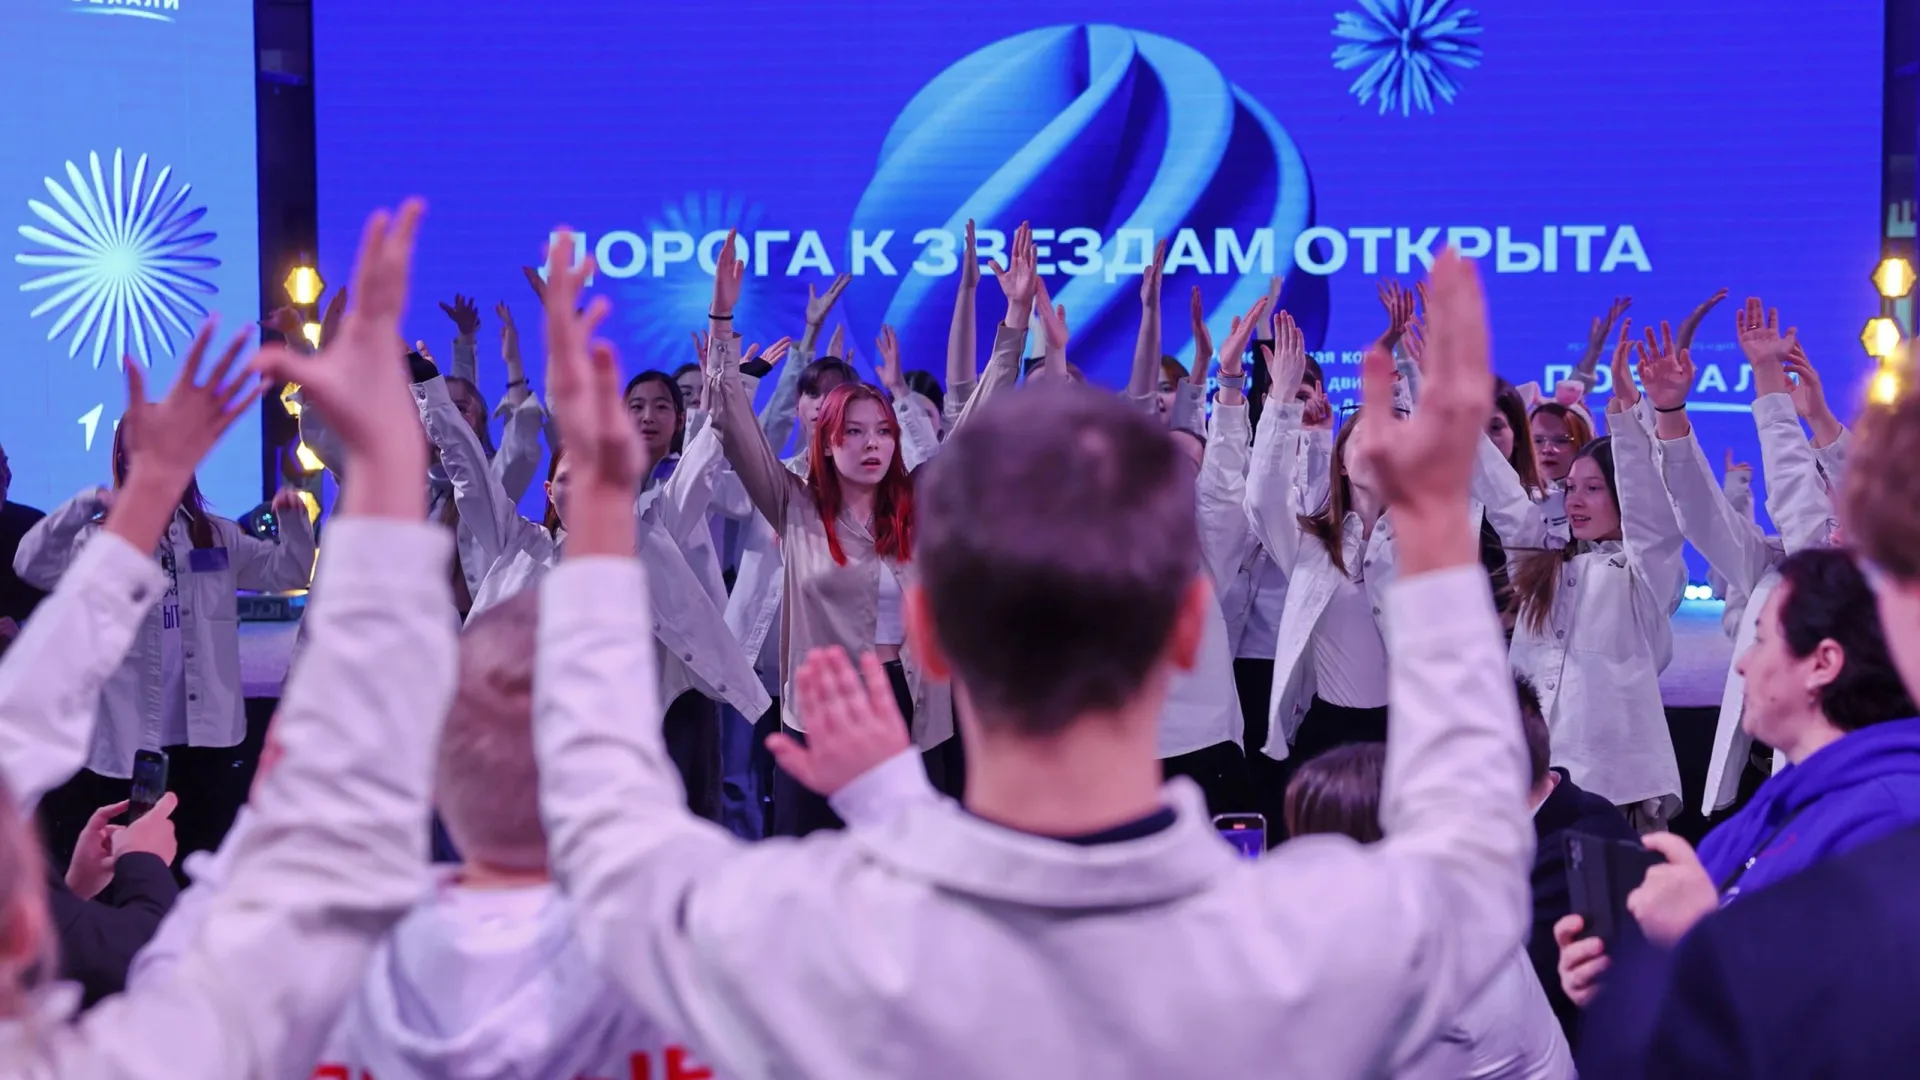 В ЯНАО мотивируют юных северян для хорошей учебы и раскрытия талантов. Фото: Андрей Ткачев / «Ямал-Медиа»